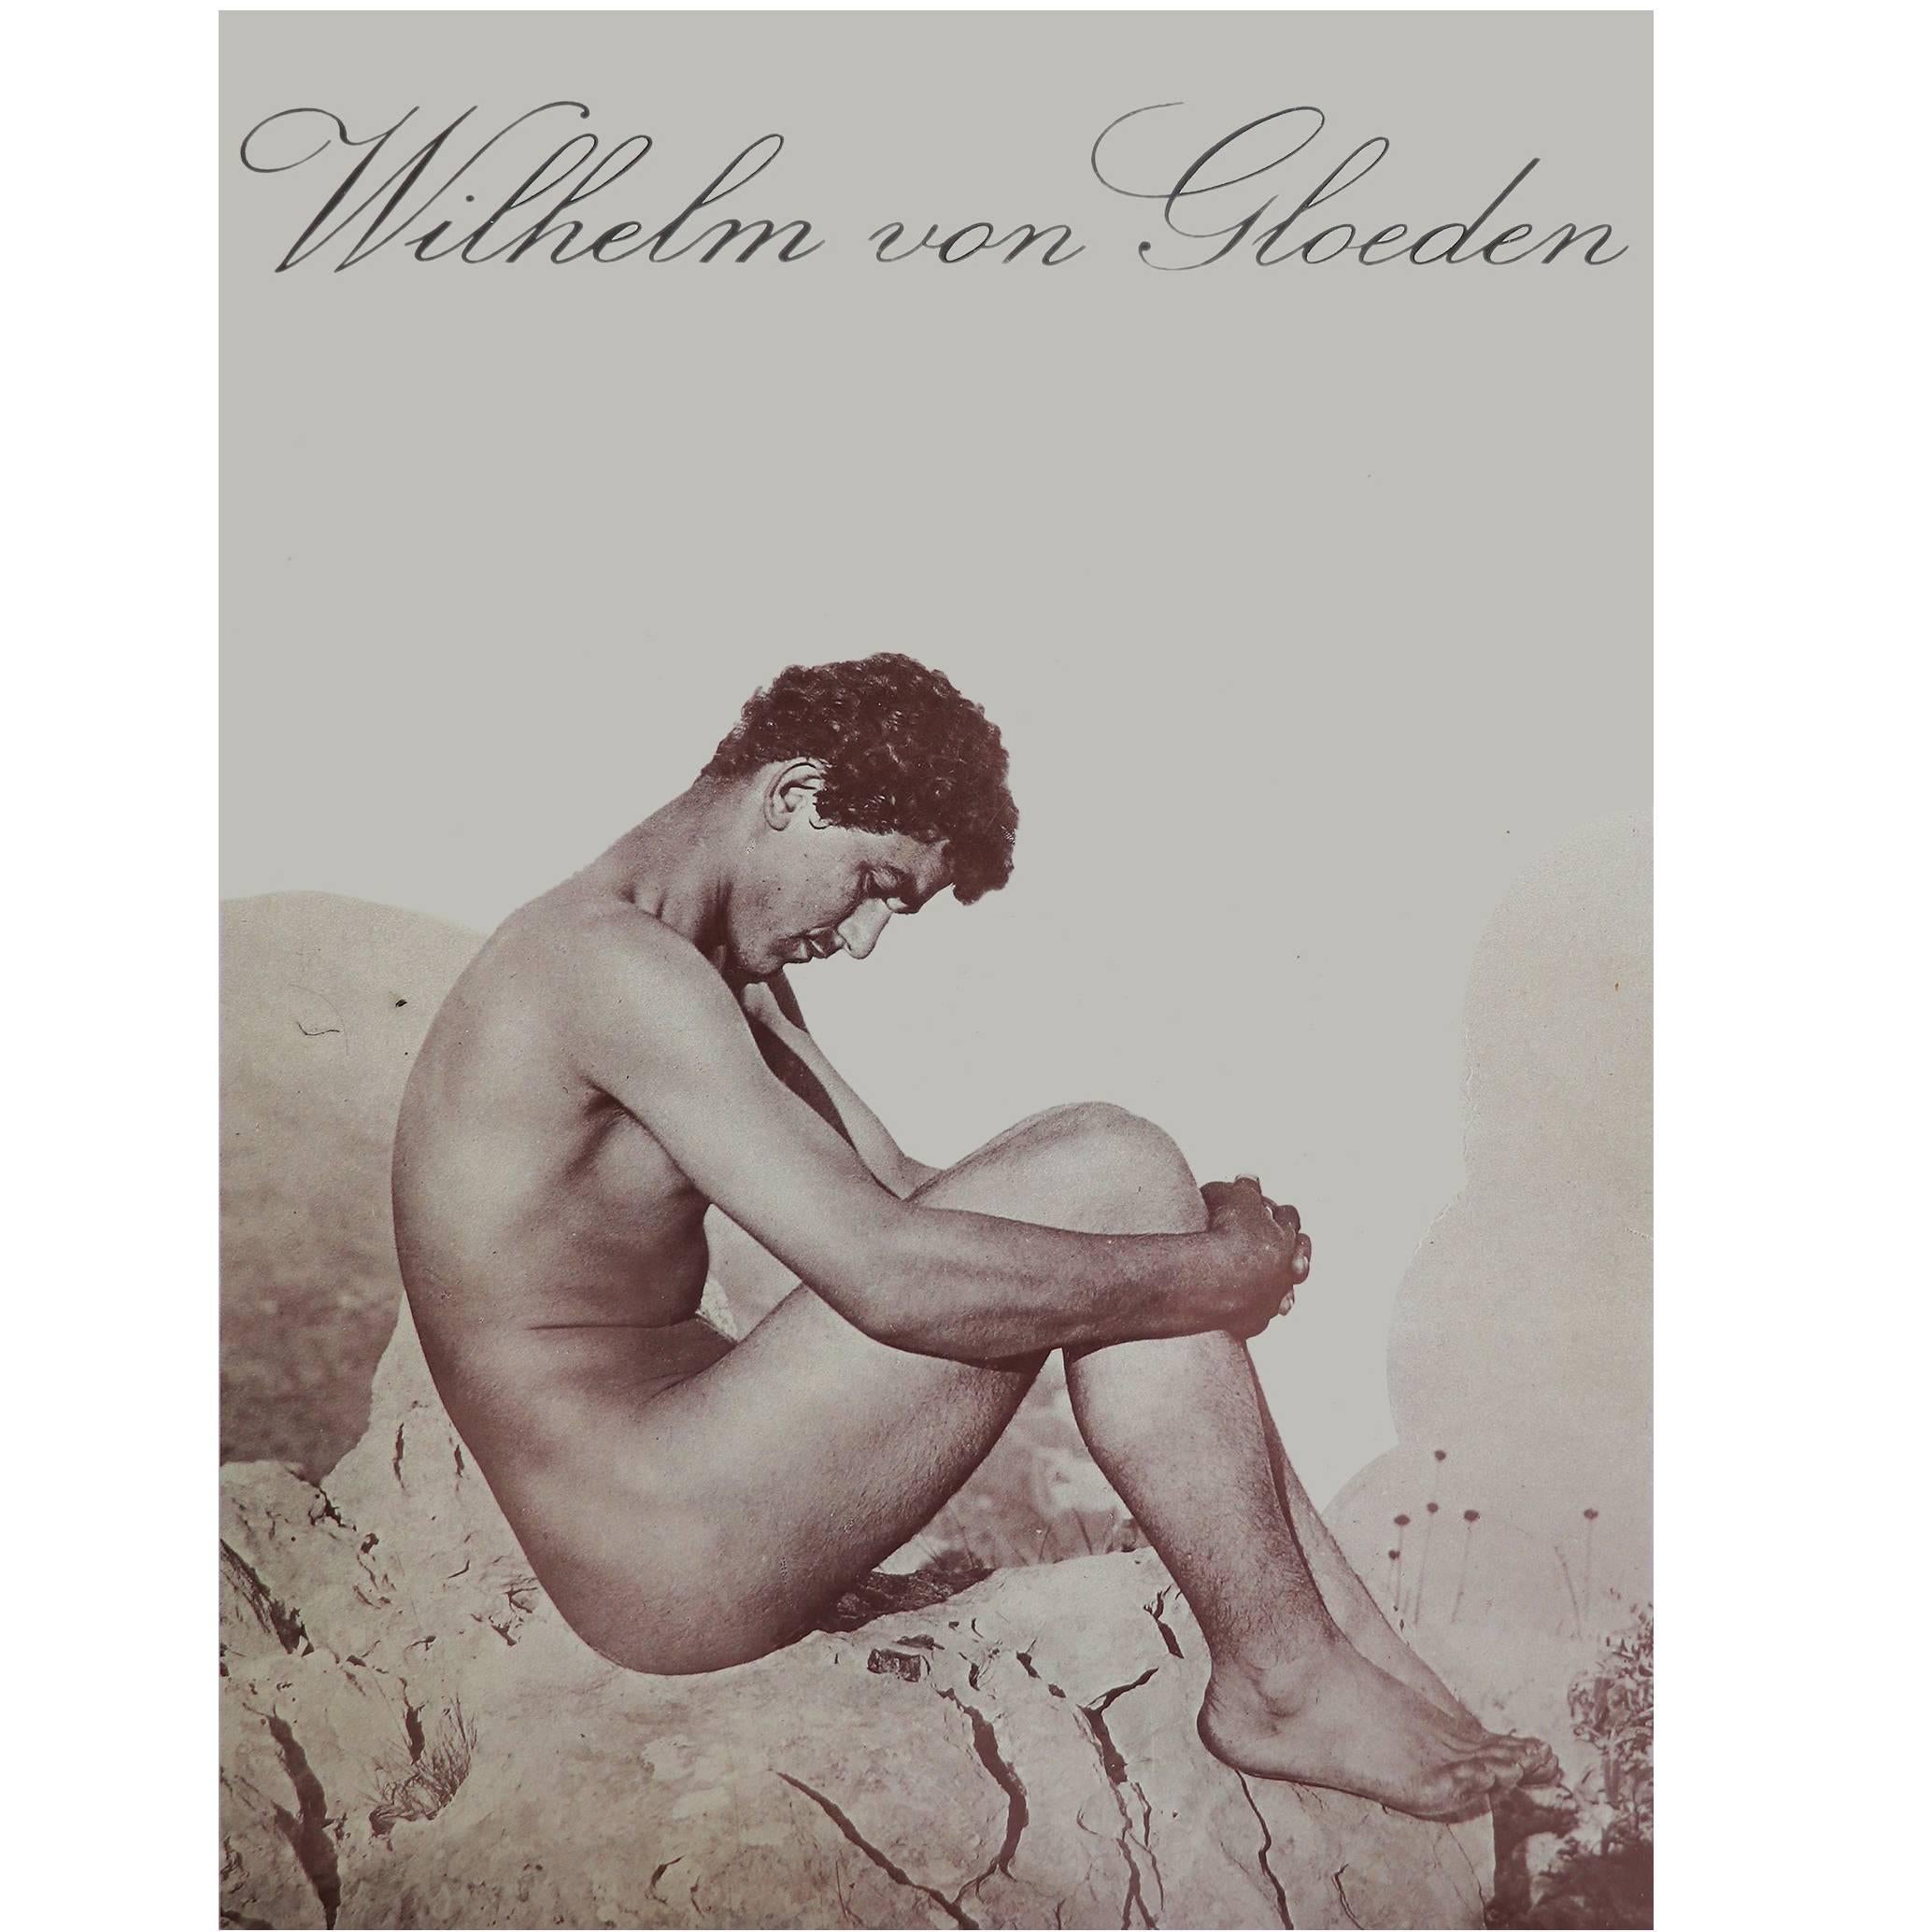 Wilhelm von Gloeden: L'arte Di Gloeden - Buch mit erotischen Fotografien